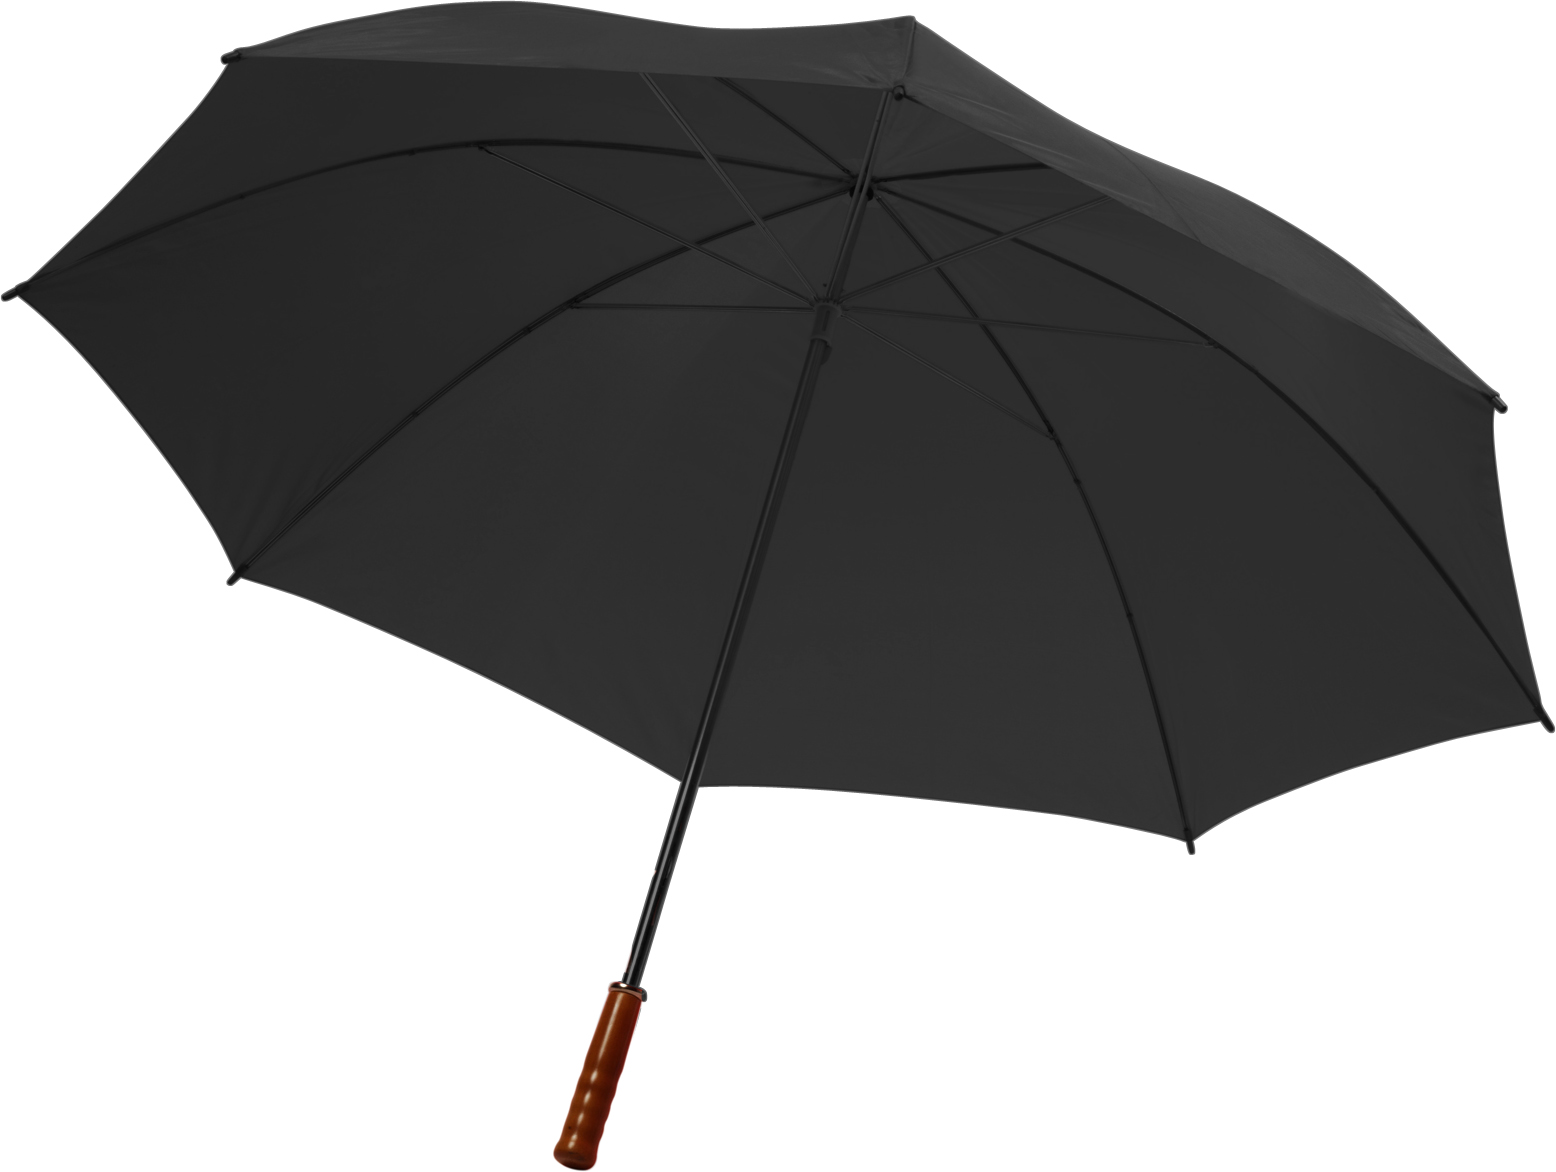 004066 001999999 3d045 ins pro01 fal - Umbrella with reflective border